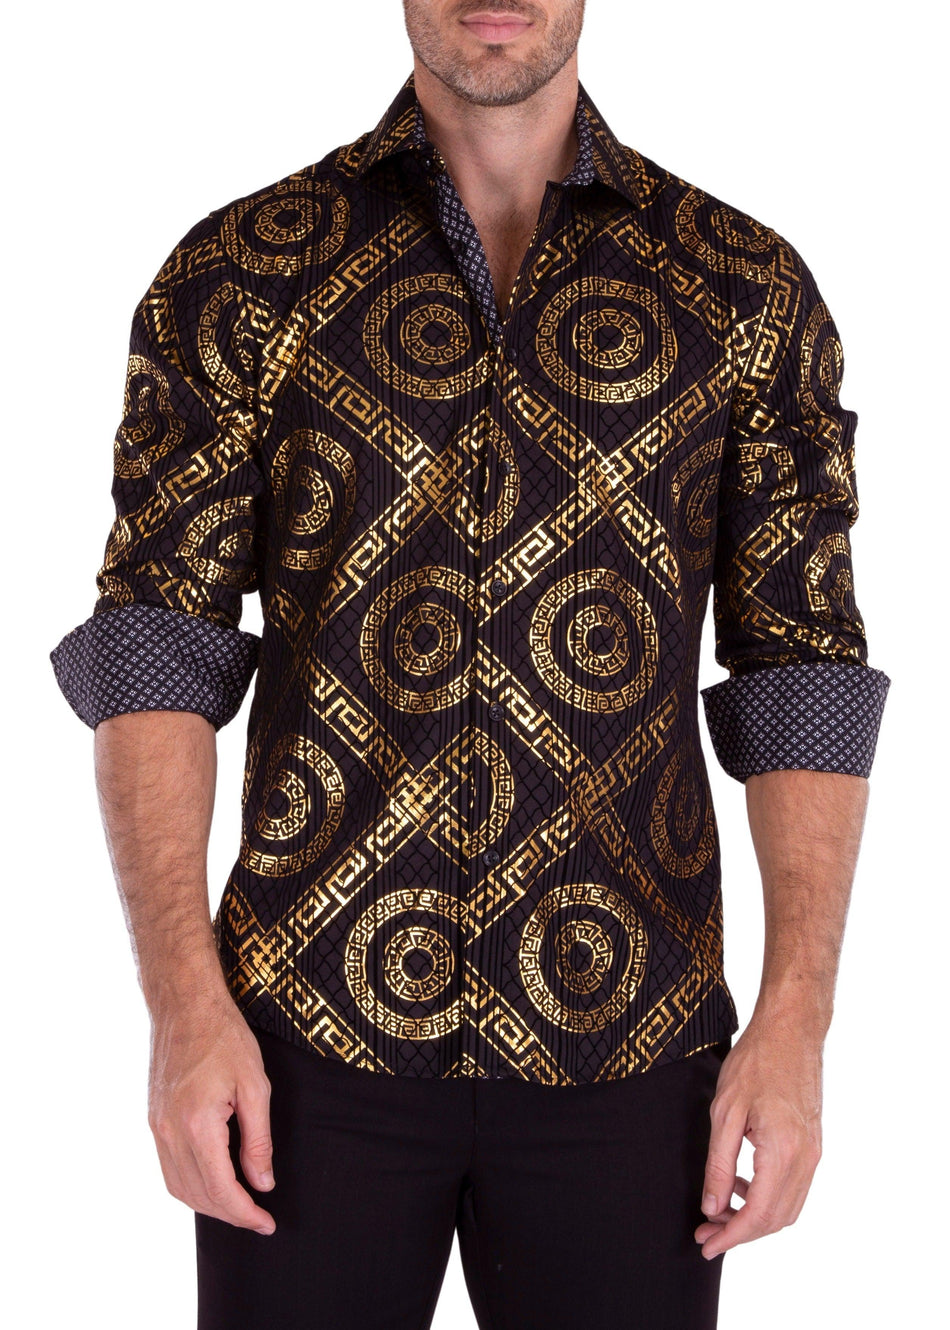 Greek Key Maze Velvet Texture Long Sleeve Dress Shirt Black